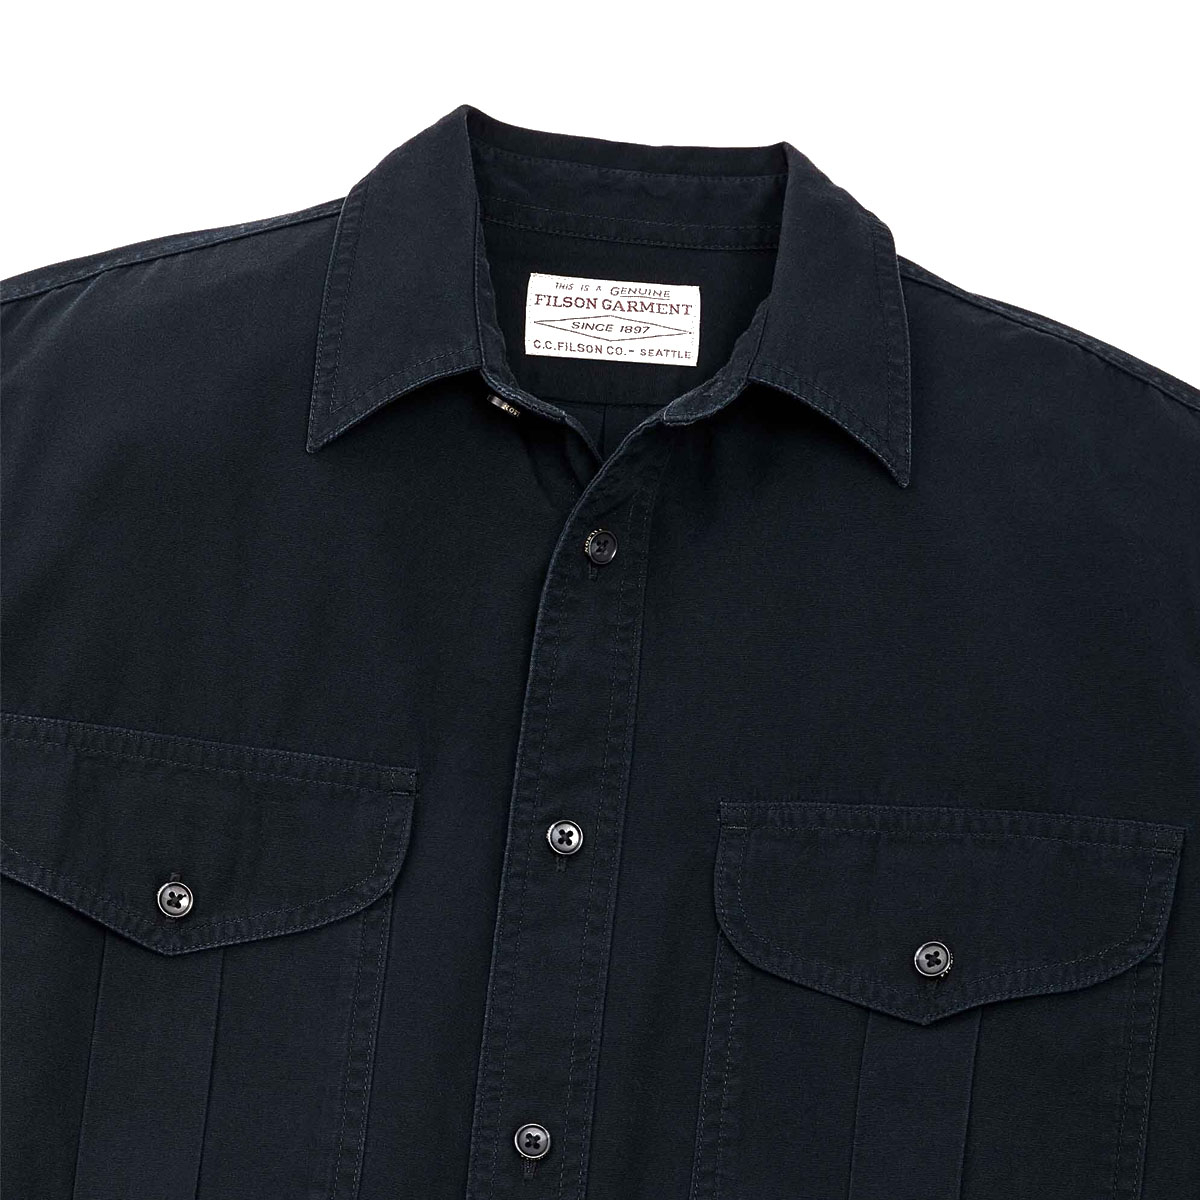 Filson Safari Cloth Guide Shirt Anthracite, hard-wearing, slijtvast, strak geweven overhemd voor op het werk of in het veld